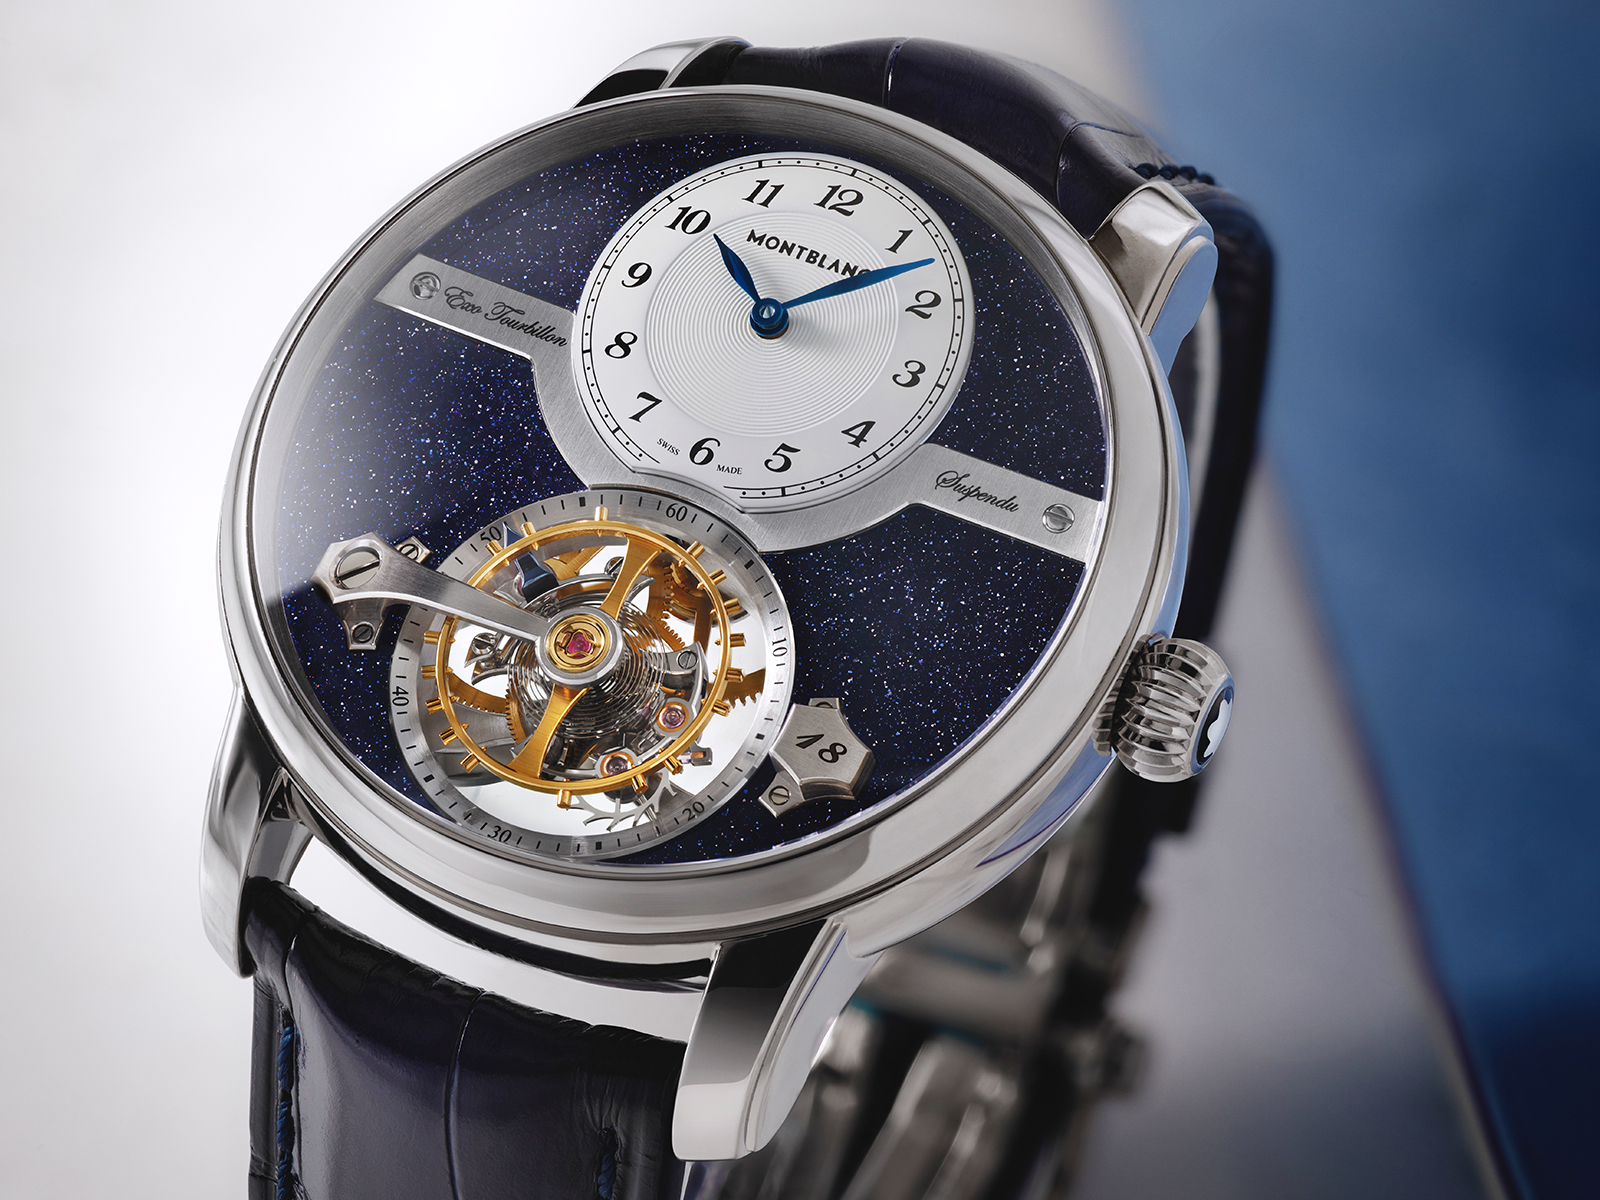 Dòng chữ “Swiss Made” trên mặt đồng hồ là minh chứng rõ nhất cho việc đồng hồ Montblanc có tốt không